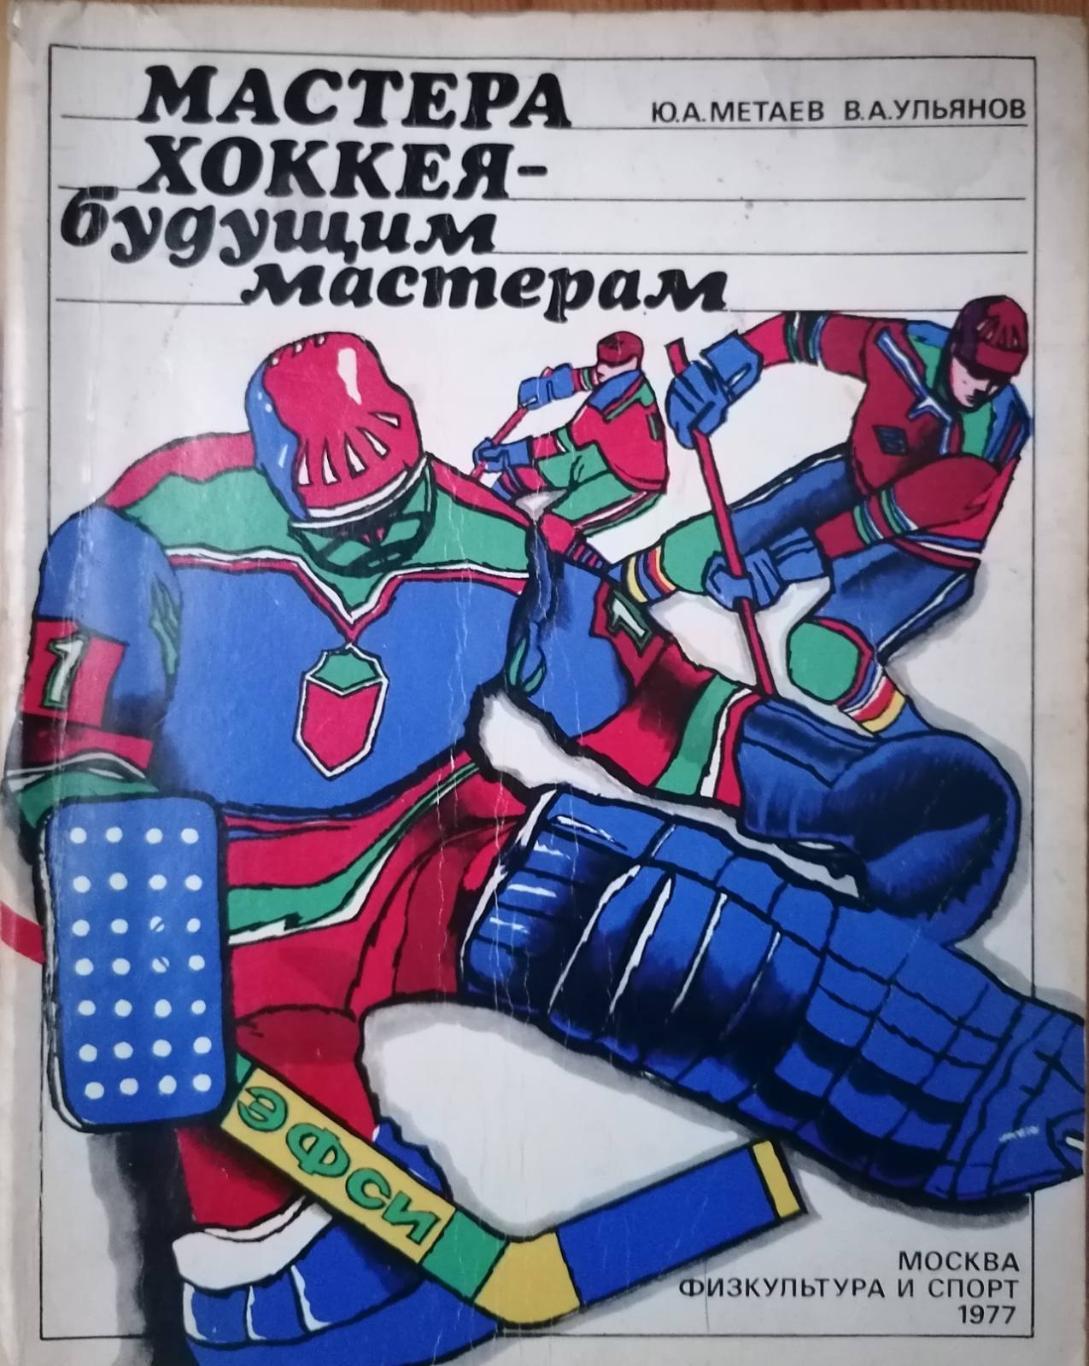 Книга. Хоккей. Ю.Метаев.Мастера хоккея- будущим мастерам..